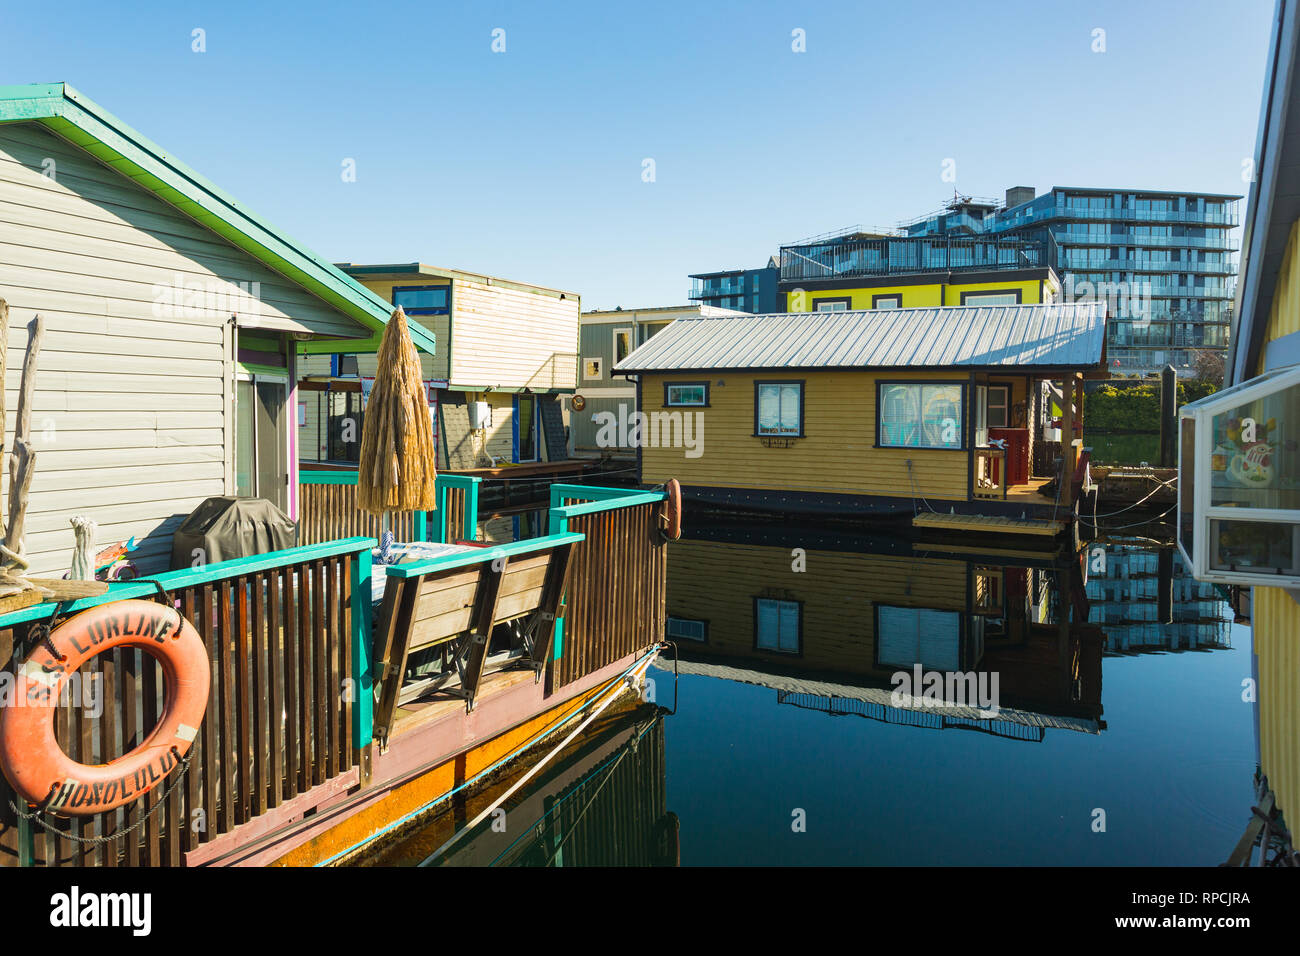 VICTORIA BC CANADA 12 févr. 2019 : Victoria Inner Harbour, quai de pêcheurs est un trésor caché. Avec des maisons flottantes, des cadeaux, de l'alimentation et sauvage Banque D'Images